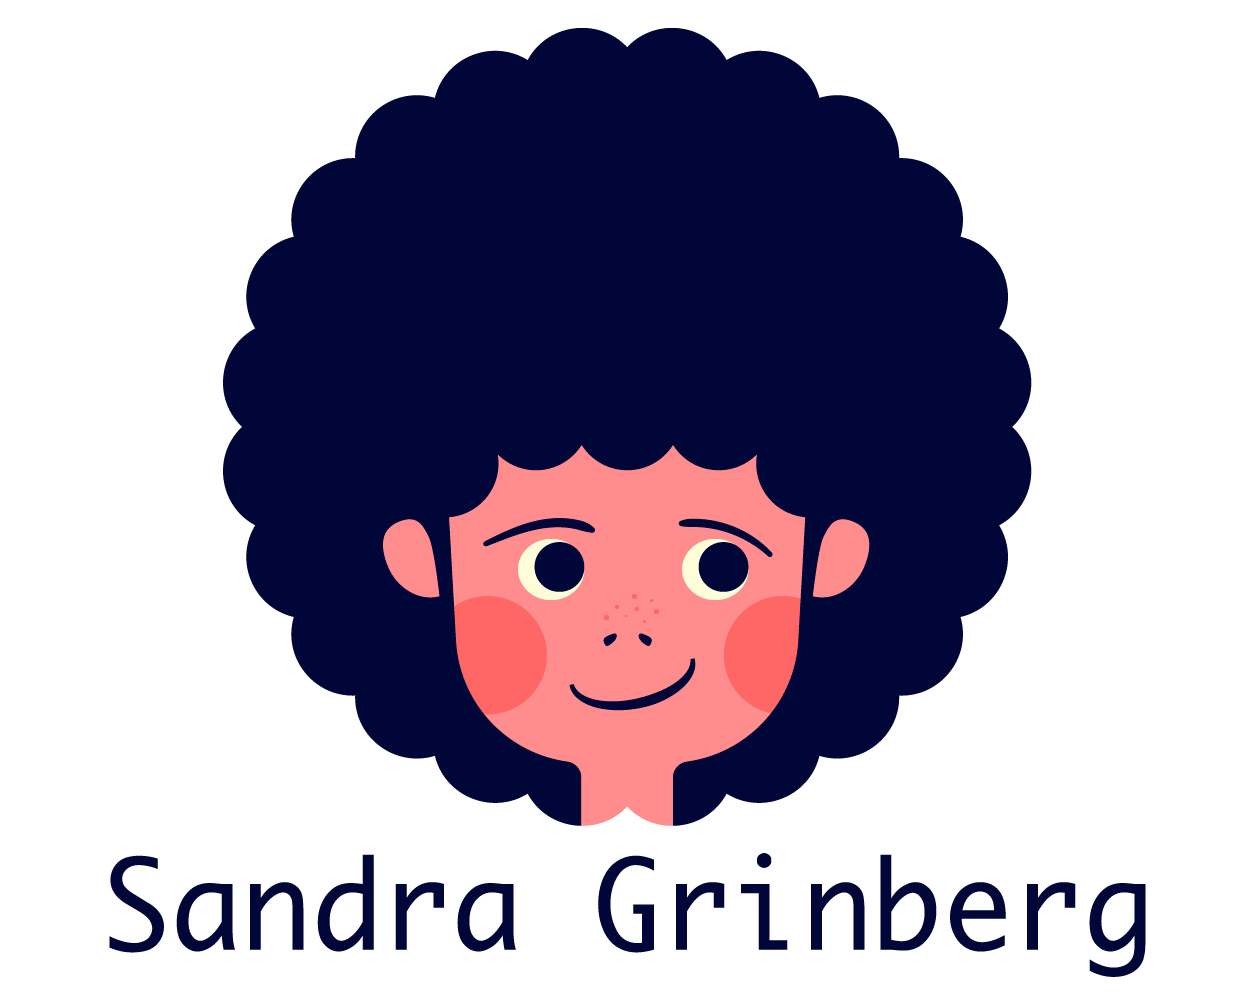 Sandra Grinberg